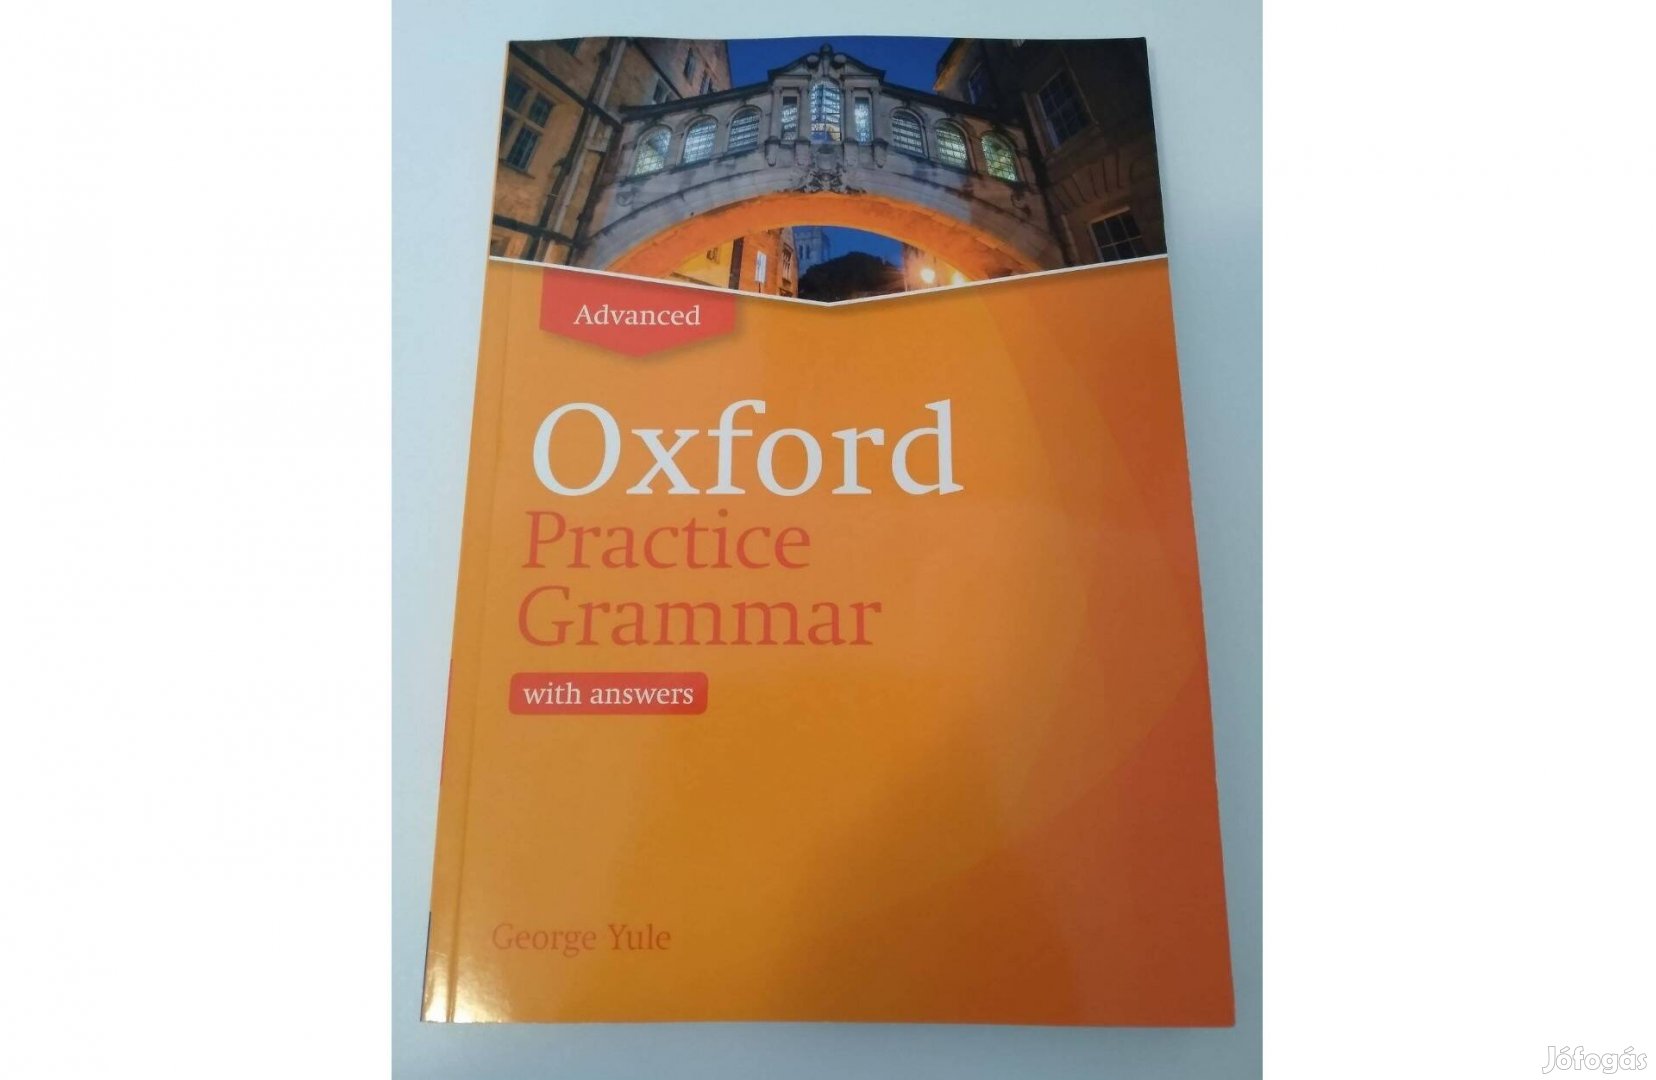 Advanced Oxford Practice Grammar szerző: George Yule angol könyv